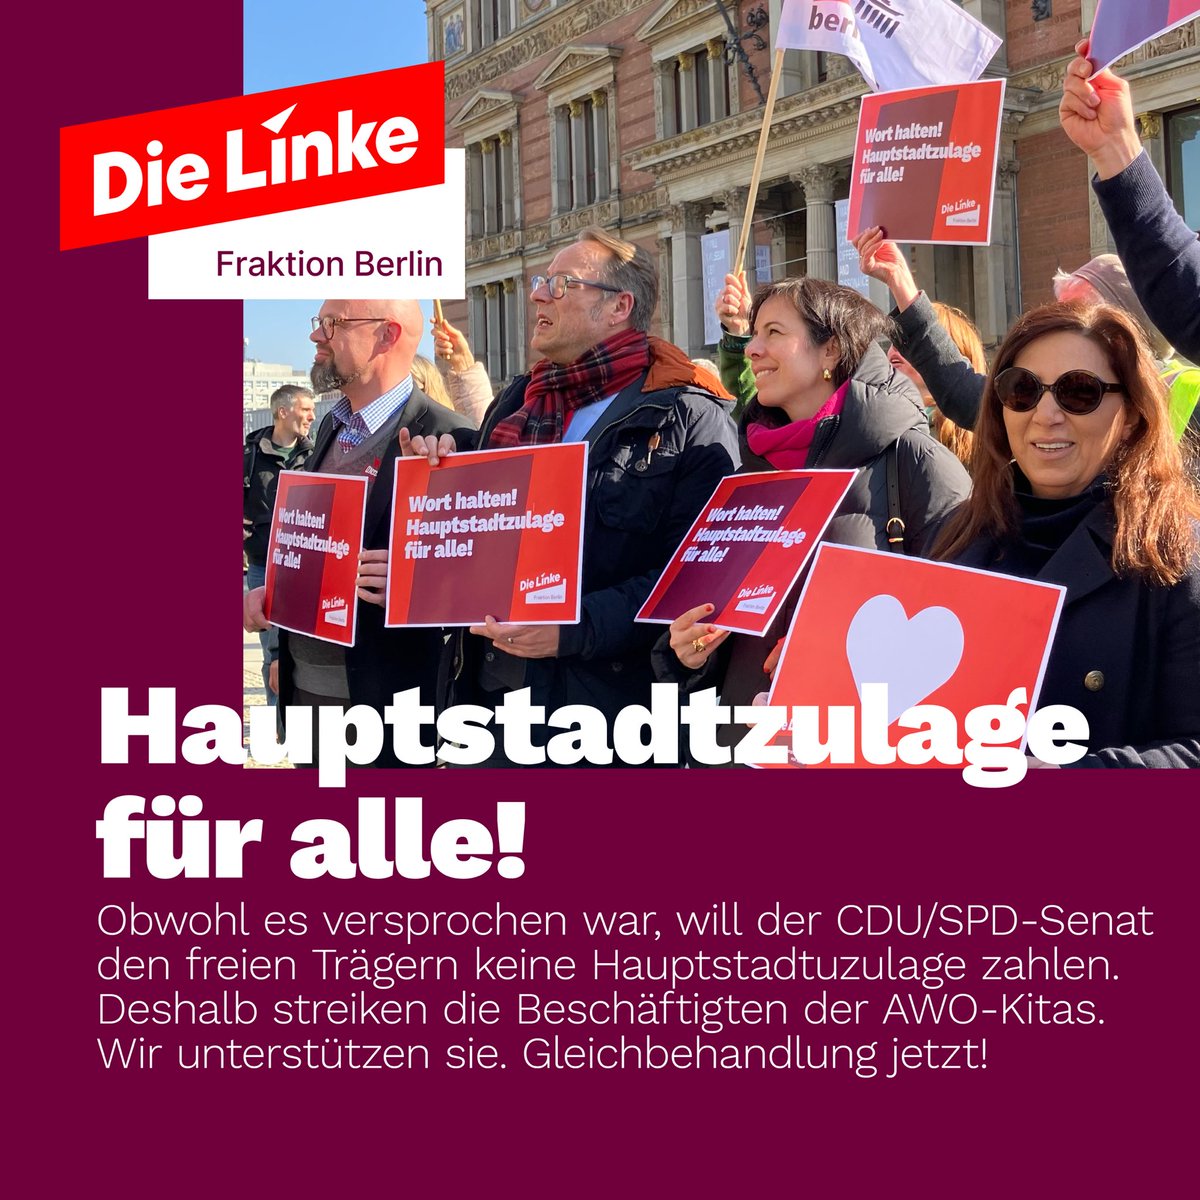 Schluss mit der Benachteiligung freier Träger! Der #CDU/#SPD-Senat hat sein Versprechen gebrochen. Er will den freien Trägern die #Hauptstadtzulage verweigern. Montag u Dienstag streiken daher die Beschäftigten von Einrichtungen der @AWOBund. Wir unterstützen sie. Viel Erfolg!